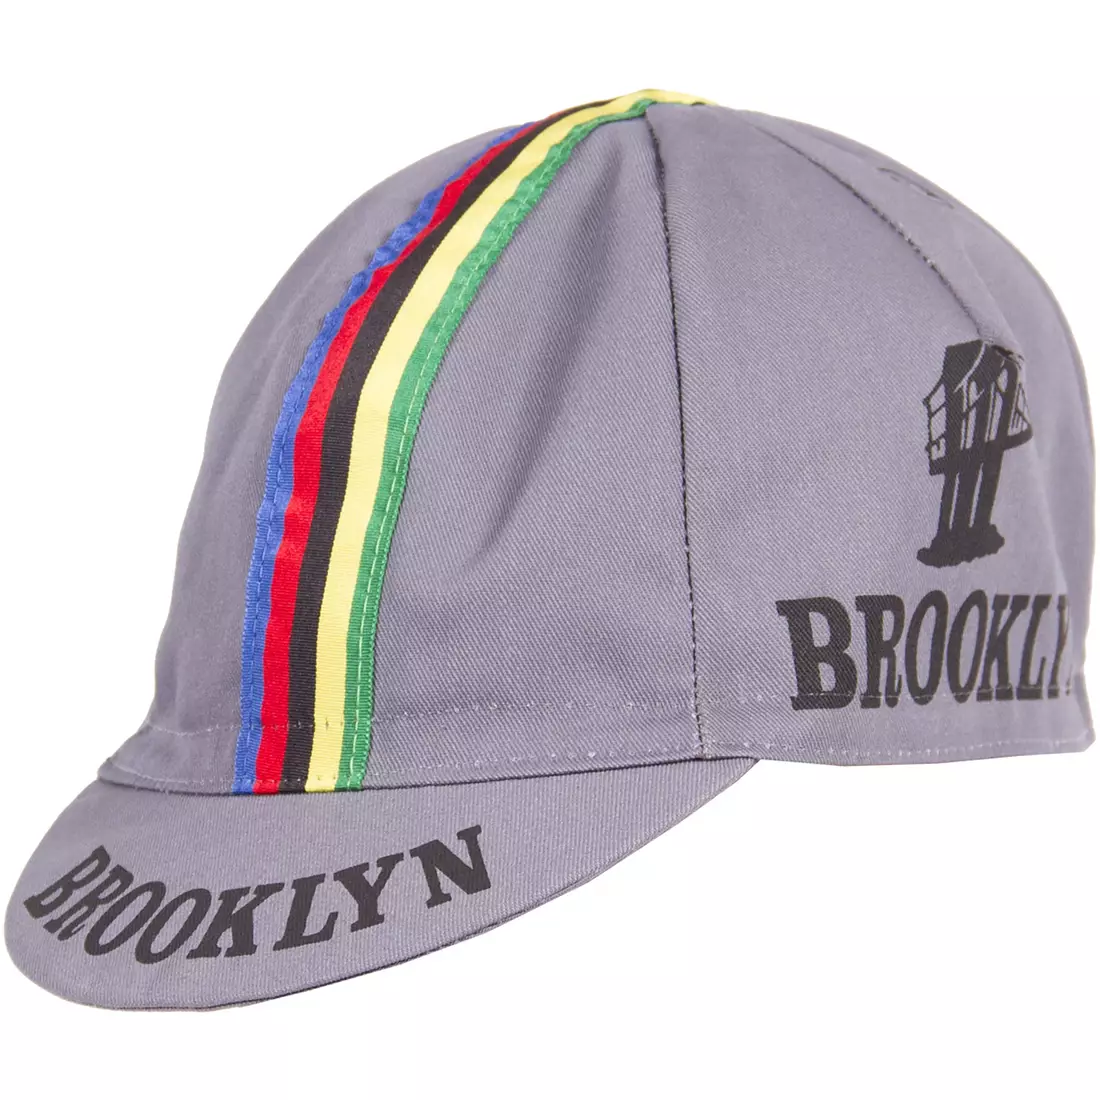 Cyklistická čepice GIORDANA SS18 - Brooklyn - Šedá s páskou GI-S6-COCA-BROK-GRAY jedna velikost